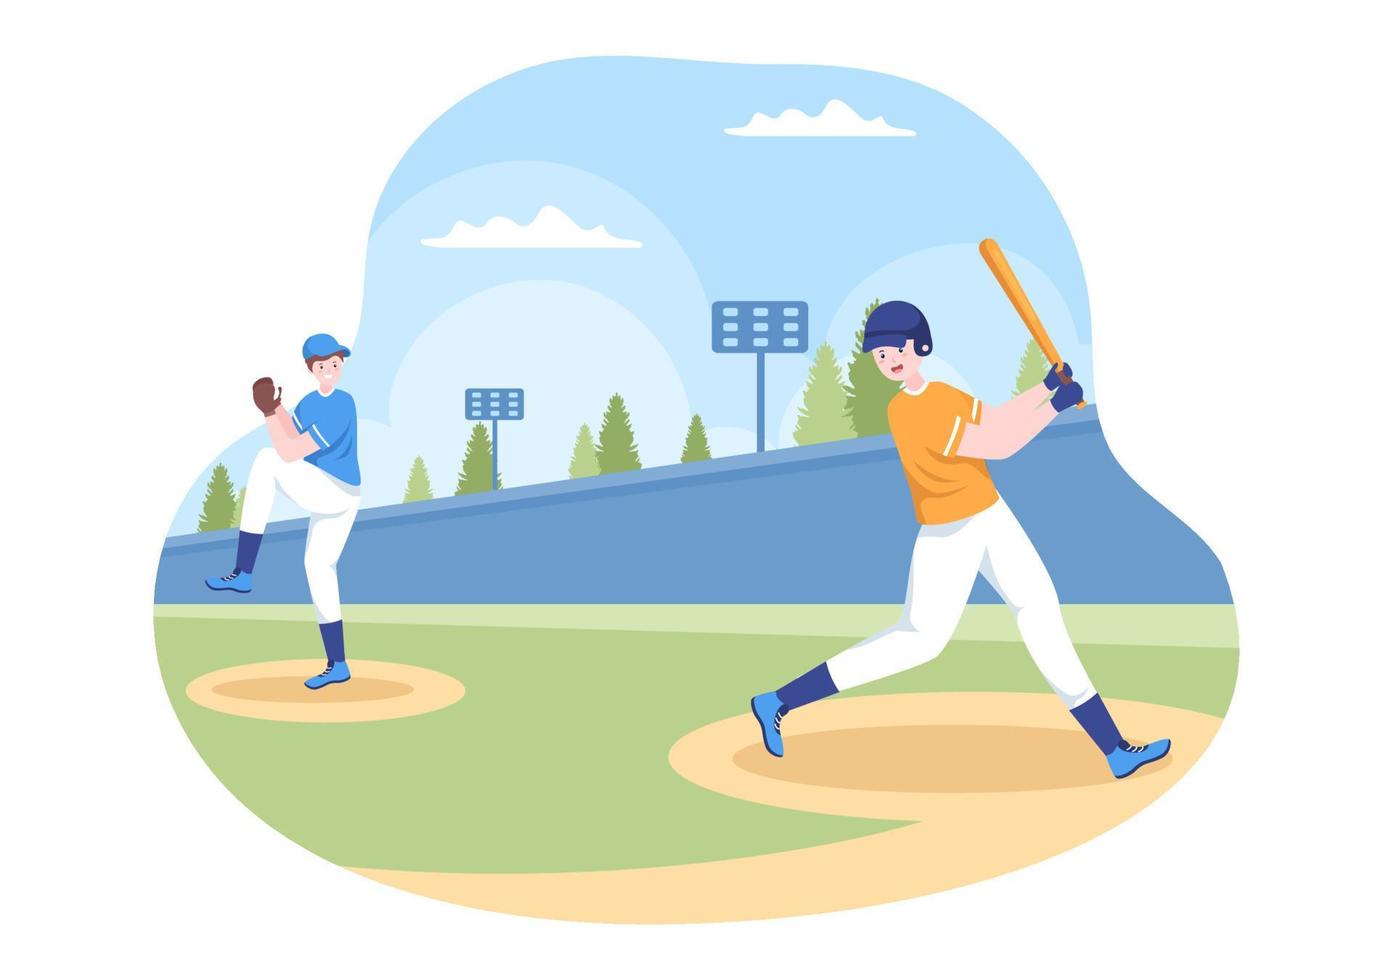 il giocatore di baseball fa sport lanciando, catturando o colpendo una palla con mazze e guanti che indossano l'uniforme sullo stadio del campo in un'illustrazione piatta del fumetto vettore